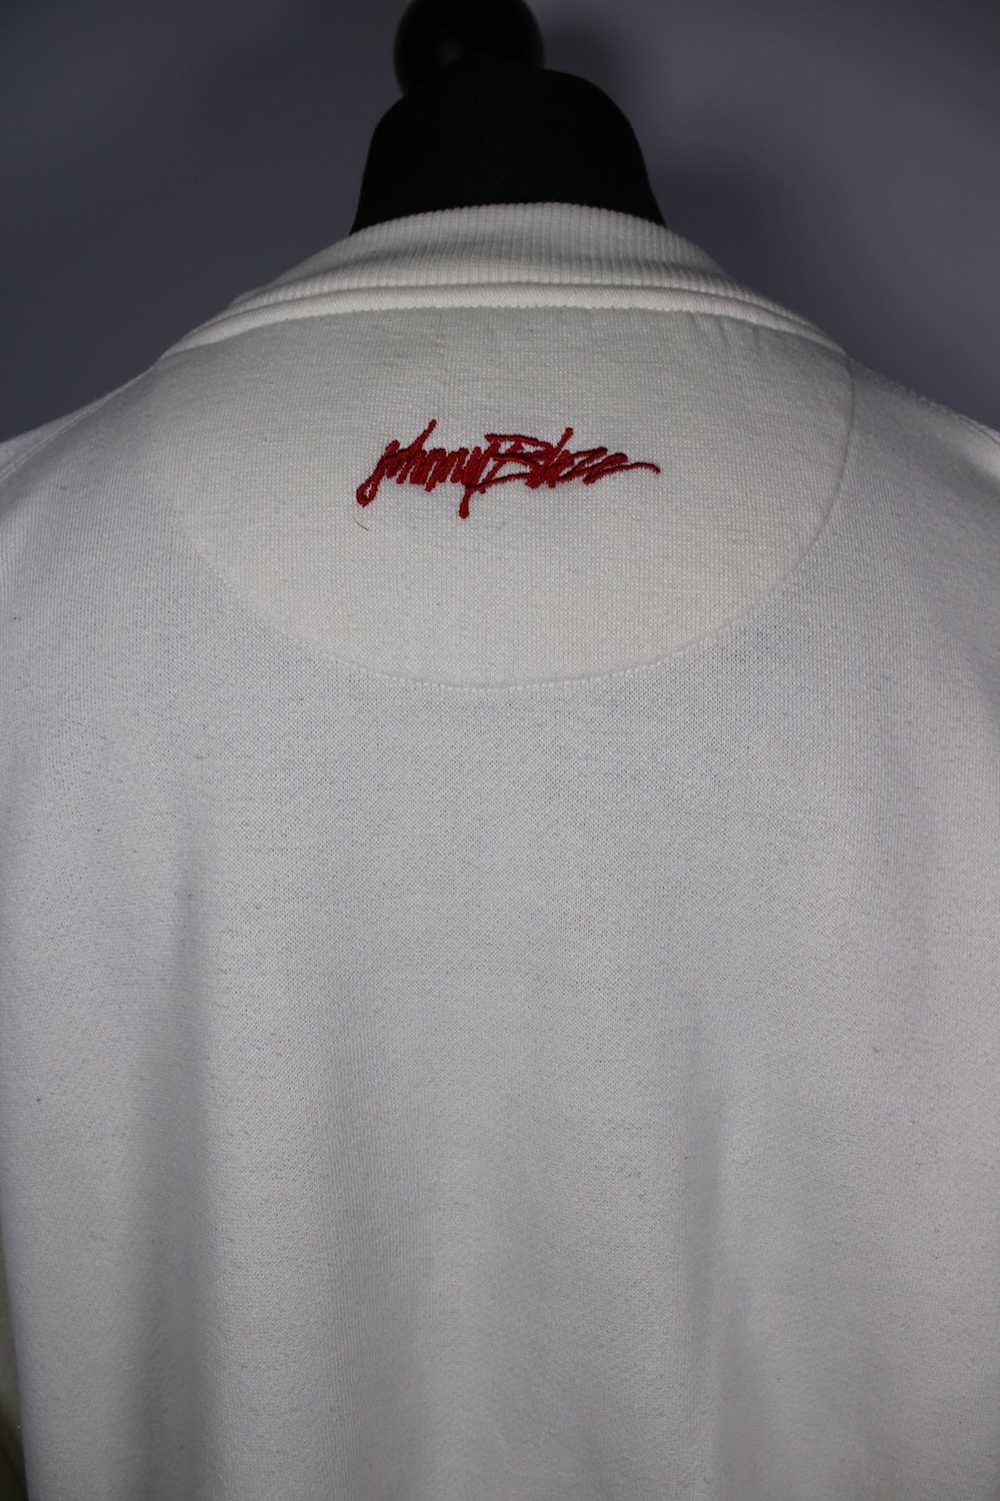 Method Method Man “Johnny Blaze” NYC sweatshirt - image 3